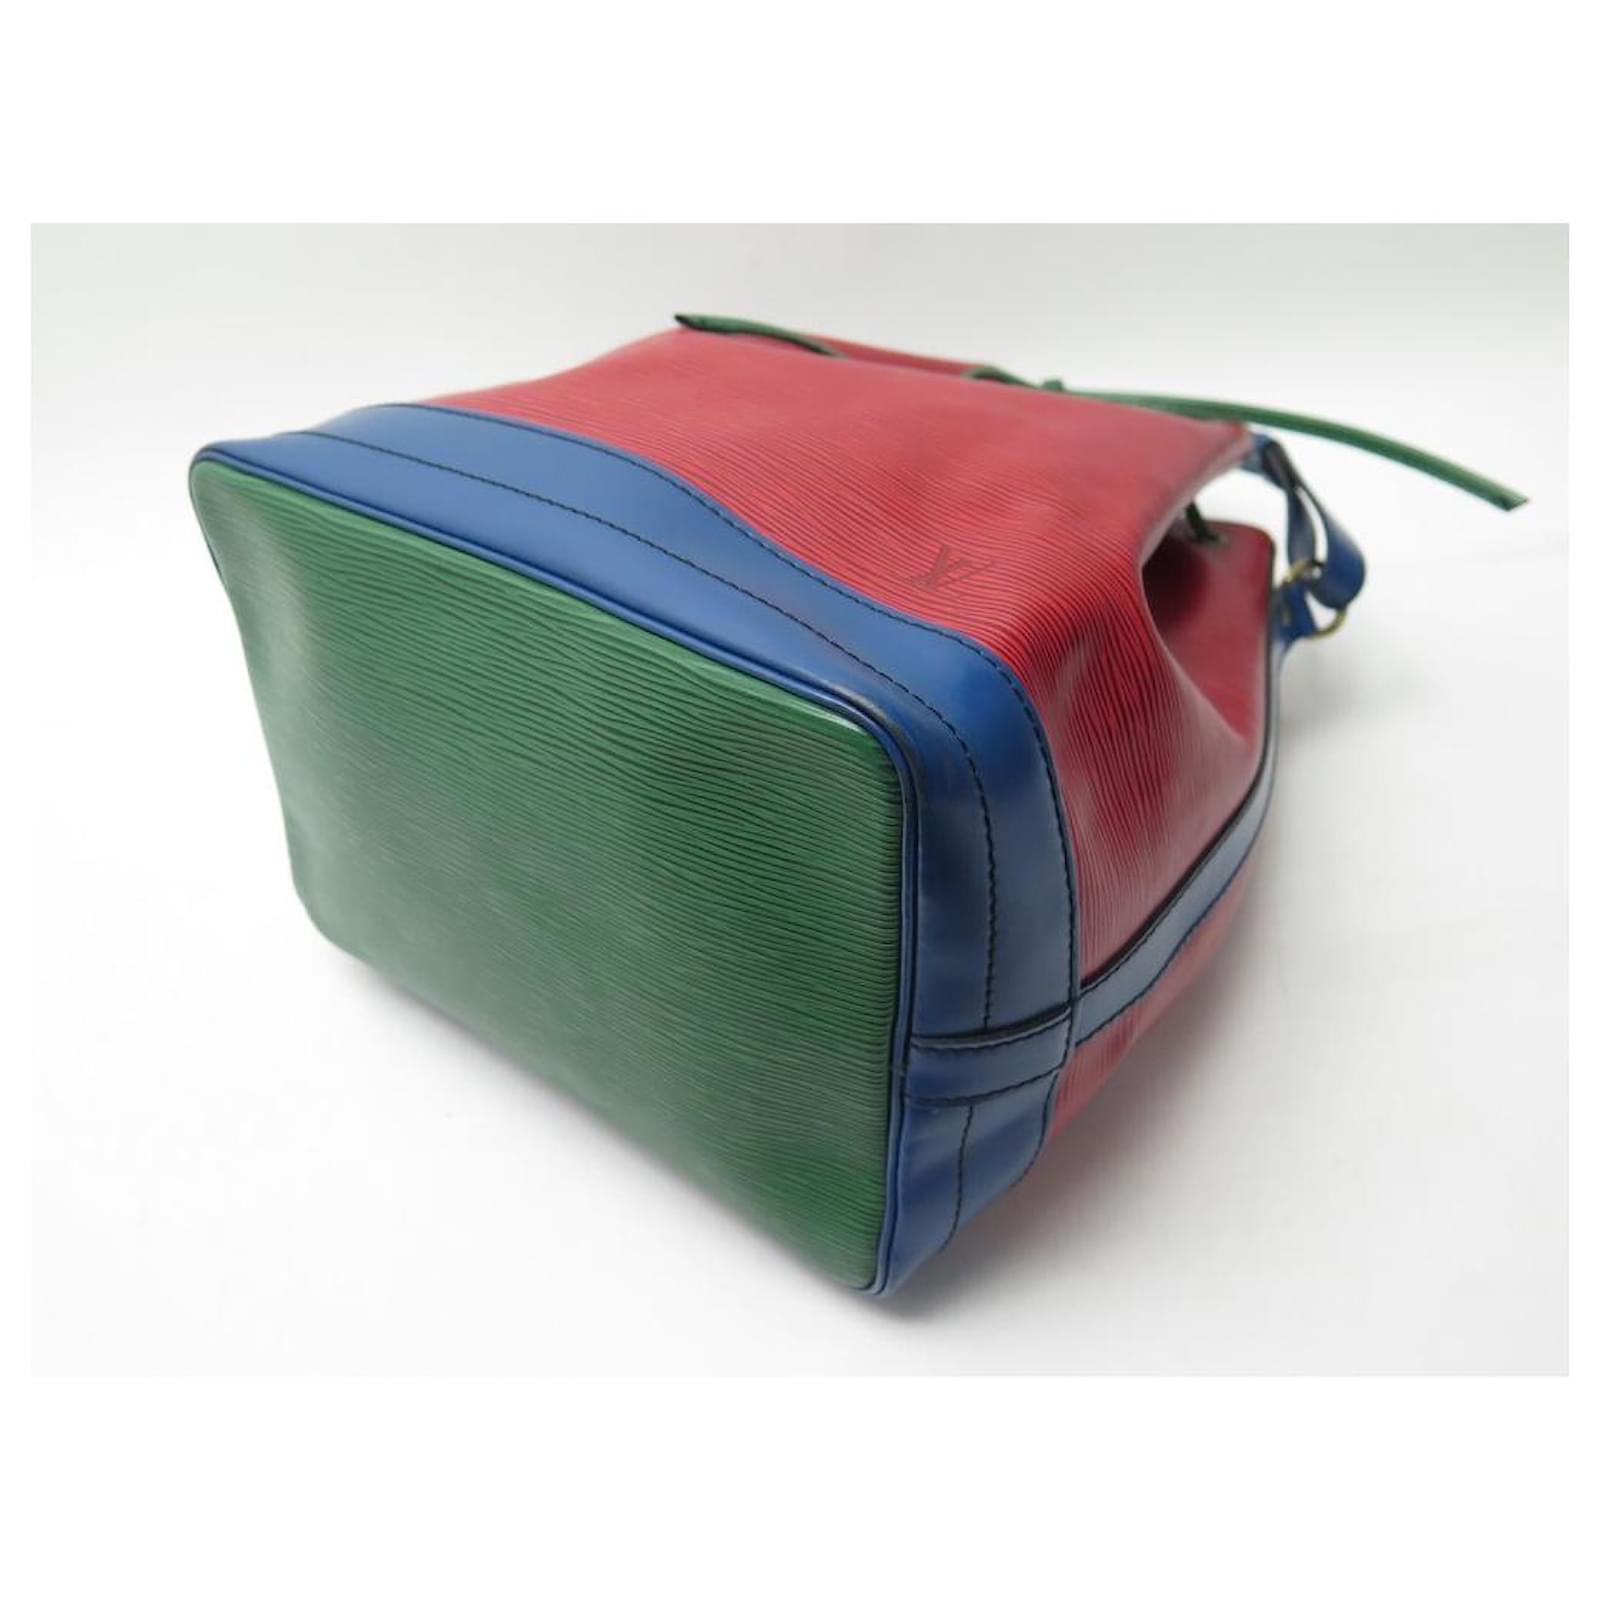 Tricolor Louis Vuitton Noe GM Bag, 1990 Production - Handbags